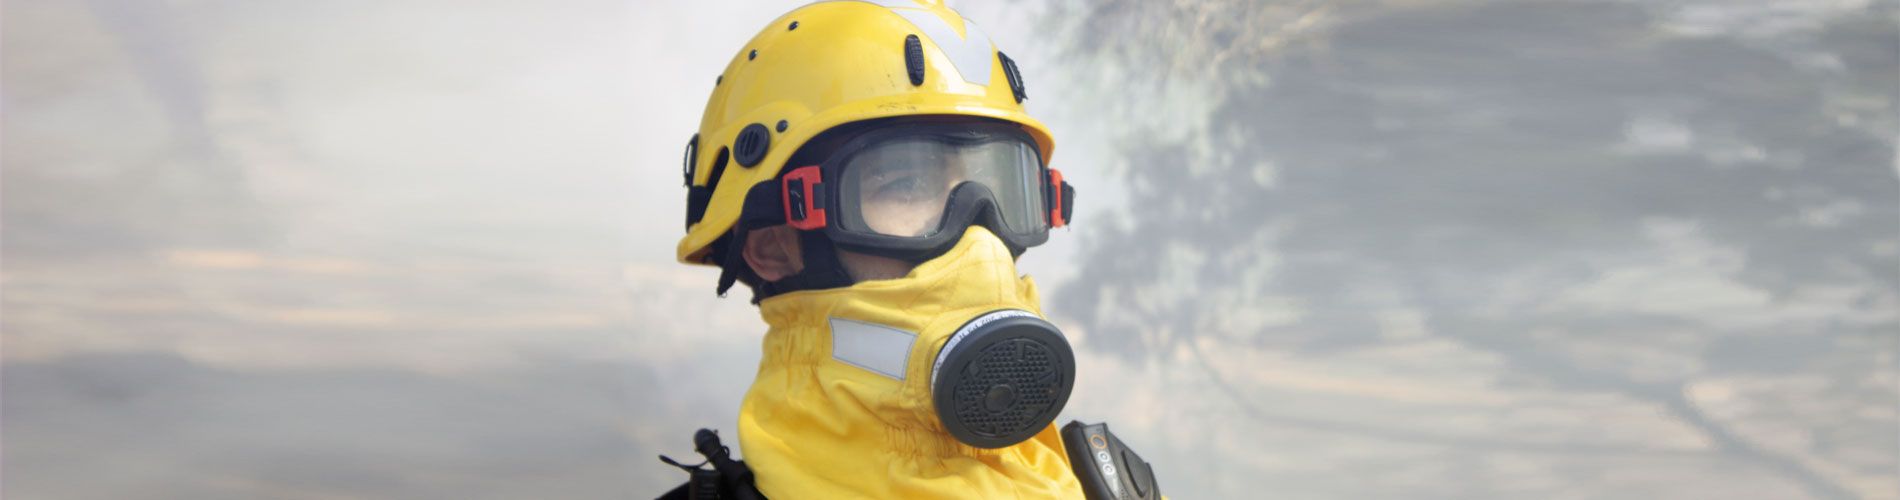 Secours d'urgence et pompiers Masque à oxygène incendie / Filtre